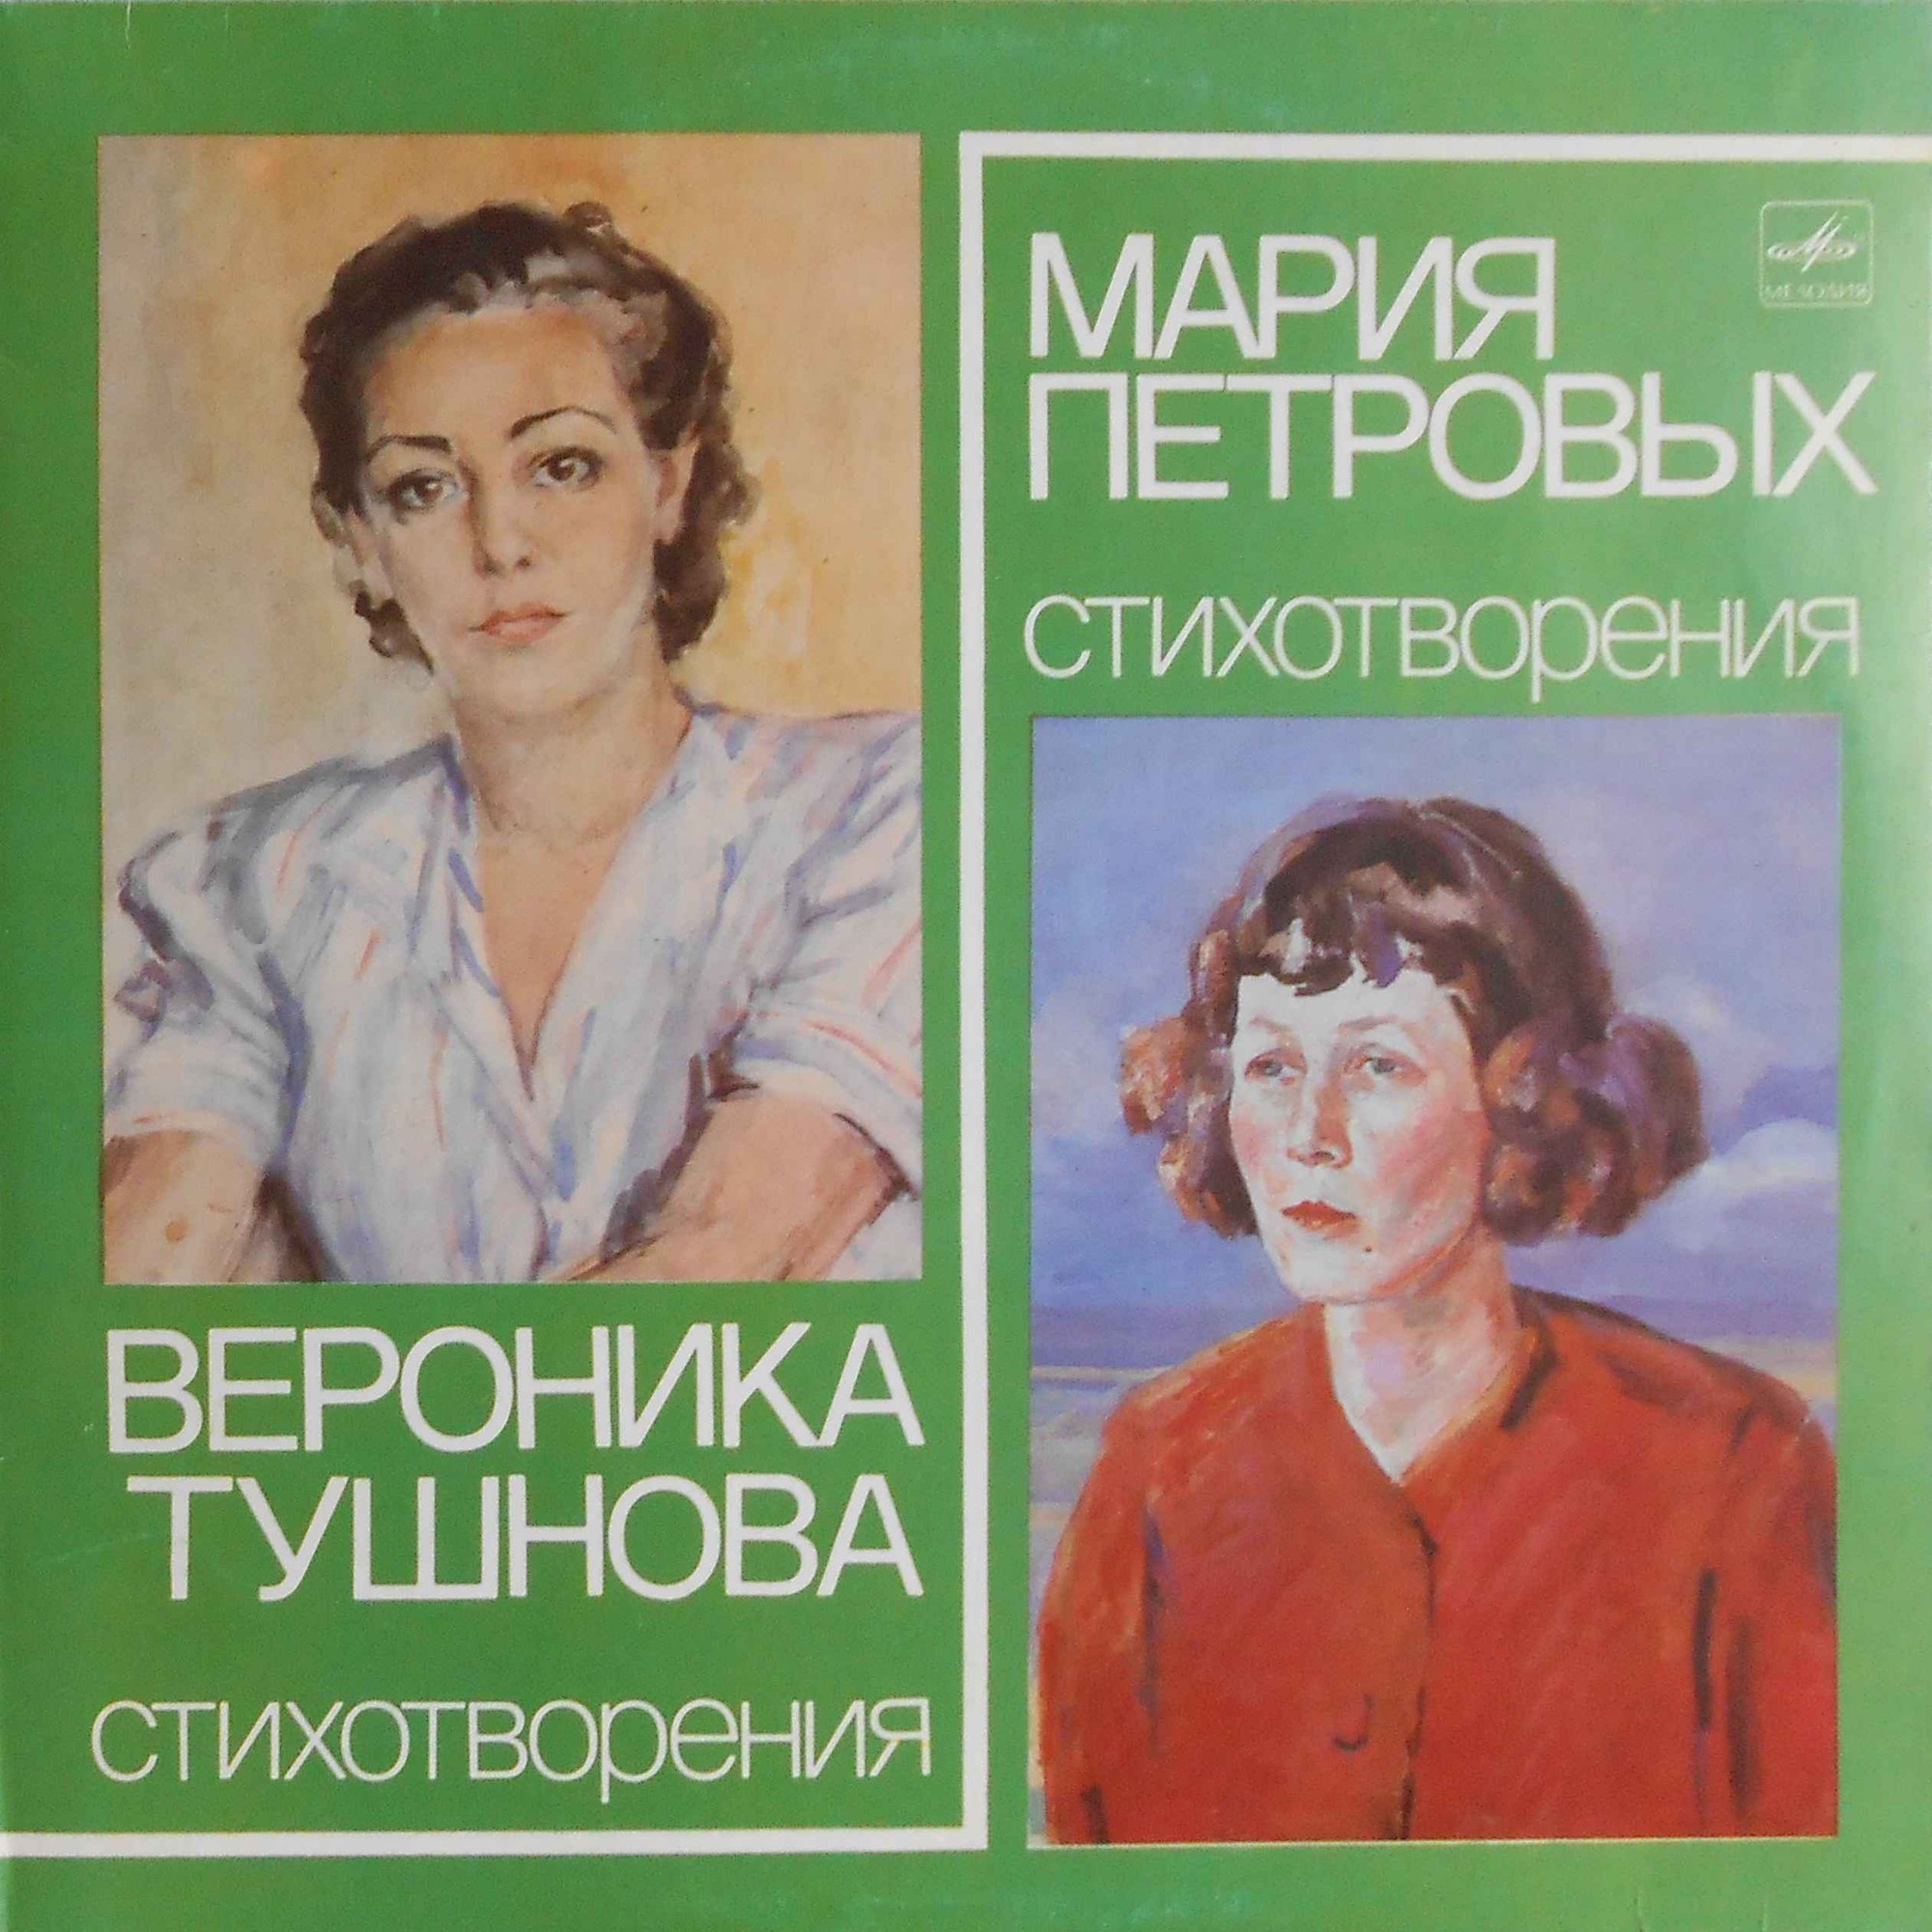 В. ТУШНОВА (1915-1965) / М. ПЕТРОВЫХ (1908-1979): Стихотворения.